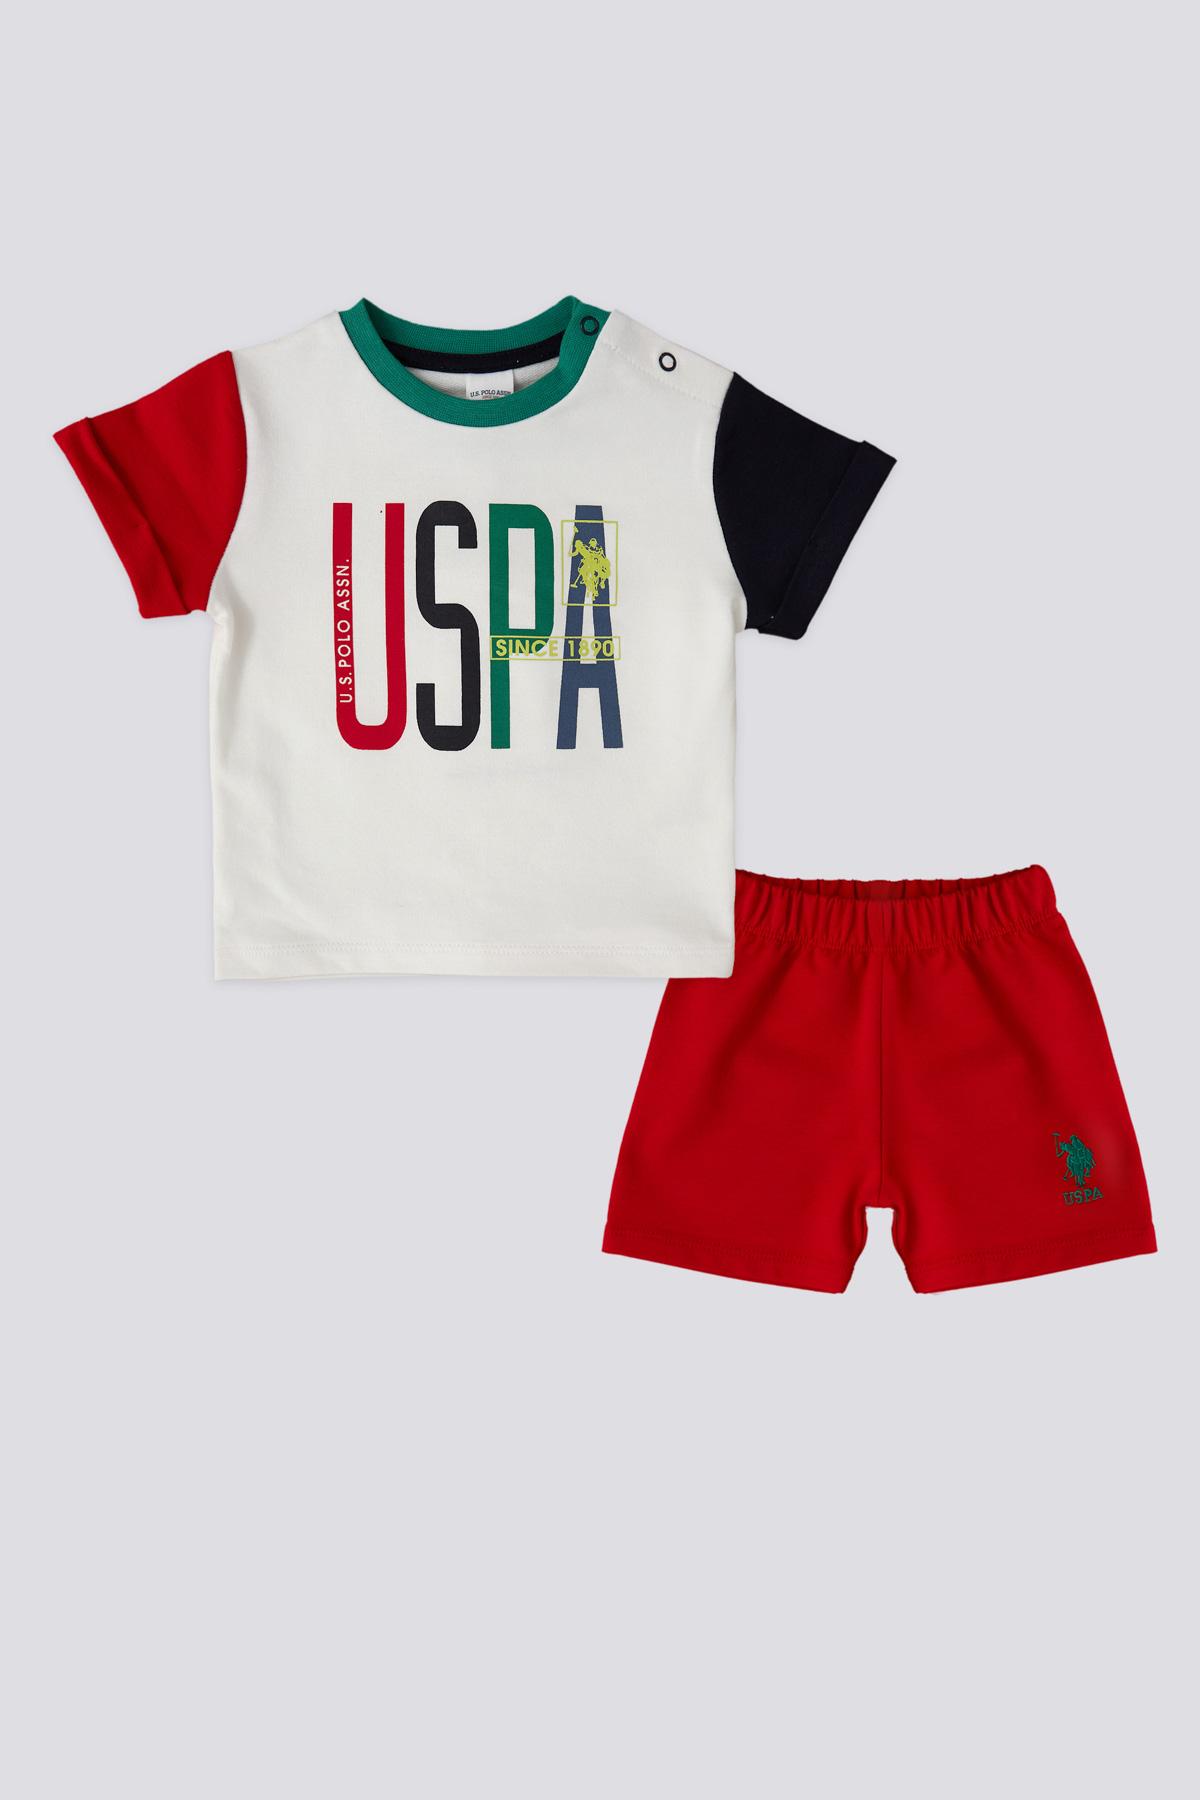 U.S. Polo Assn. Komplet za bebe USB1821, Crveno-beli